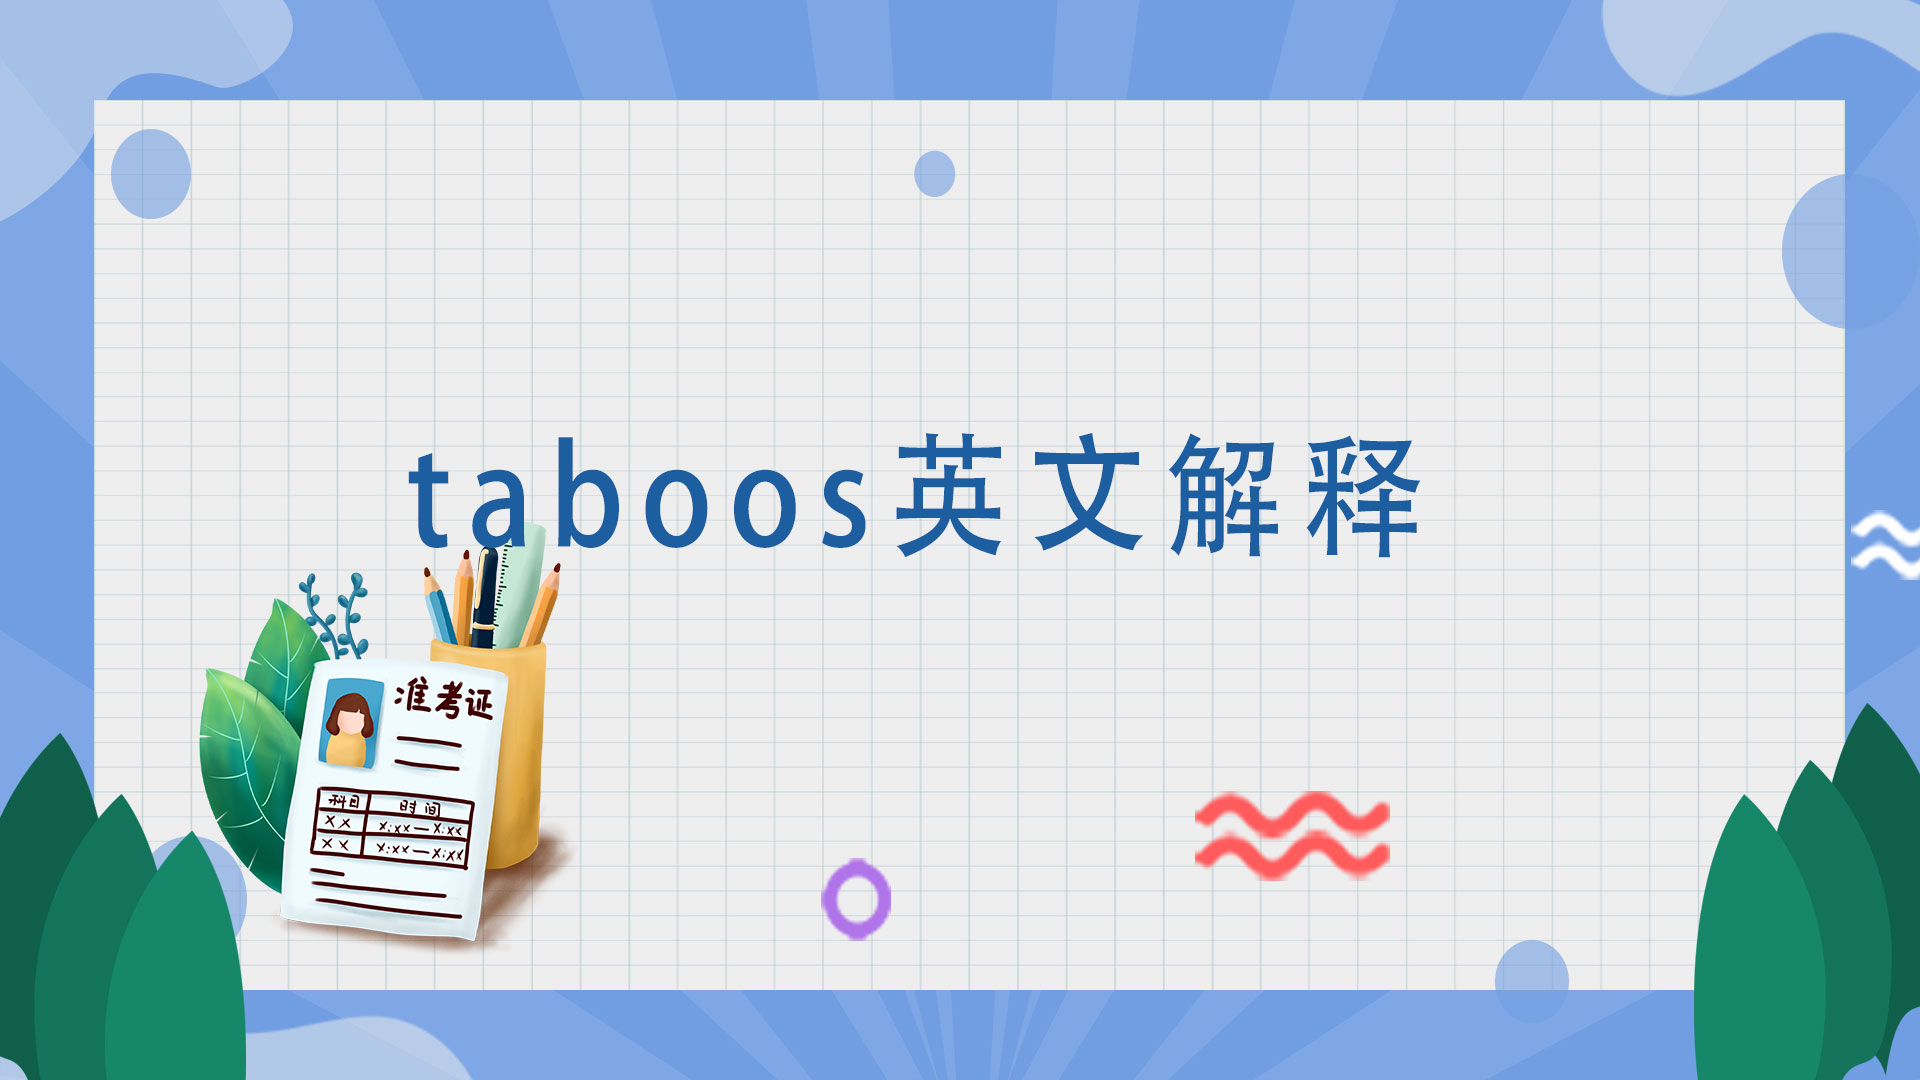 taboos英文解释